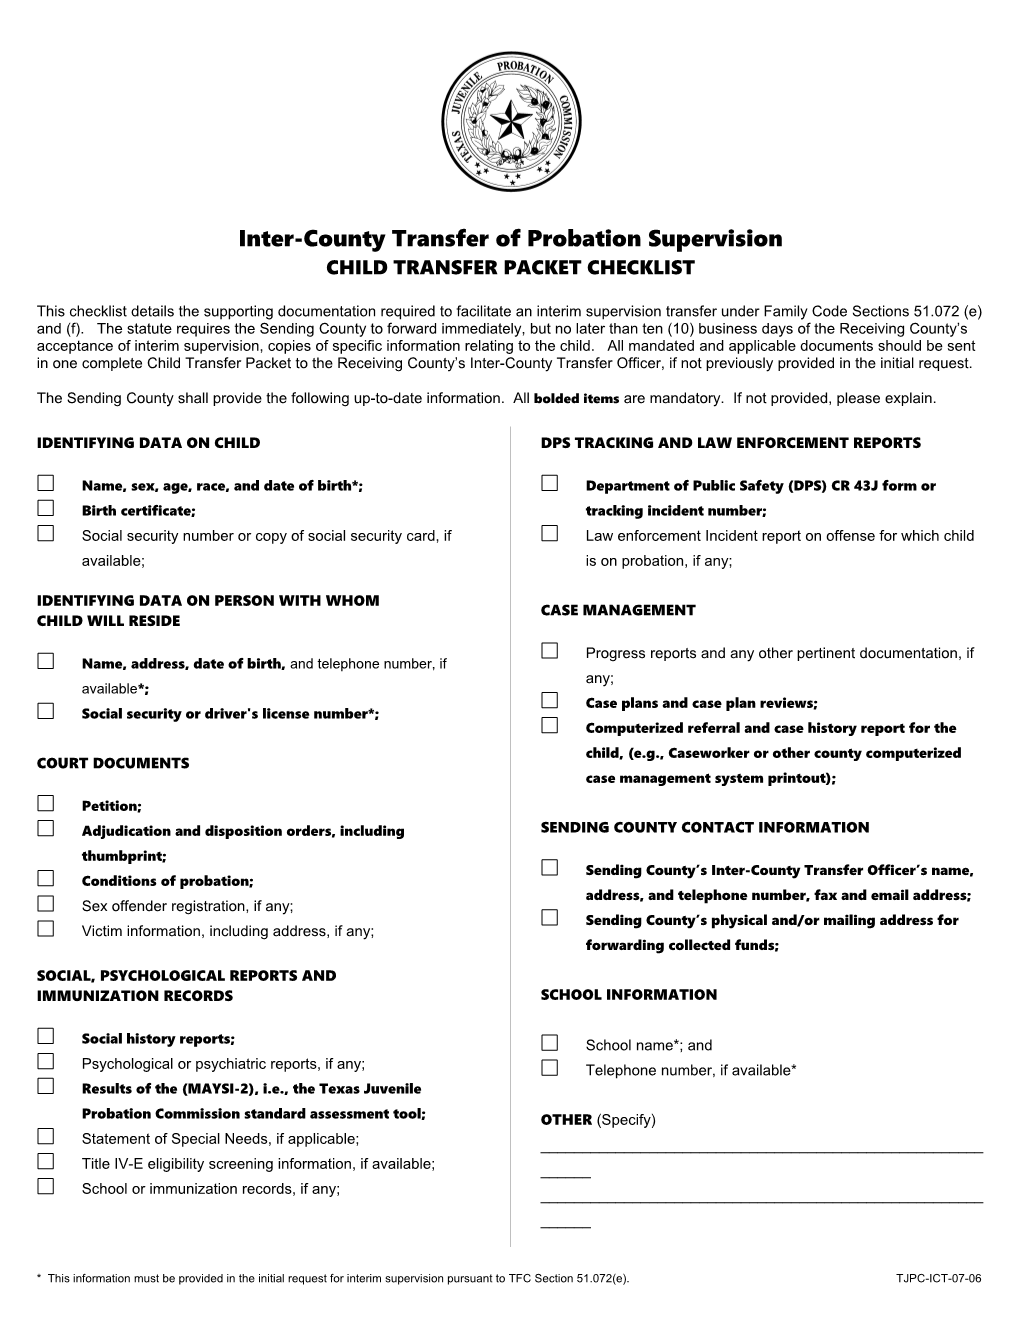 TJPC-ICT-07-06 Child Transfer Packet Checklist